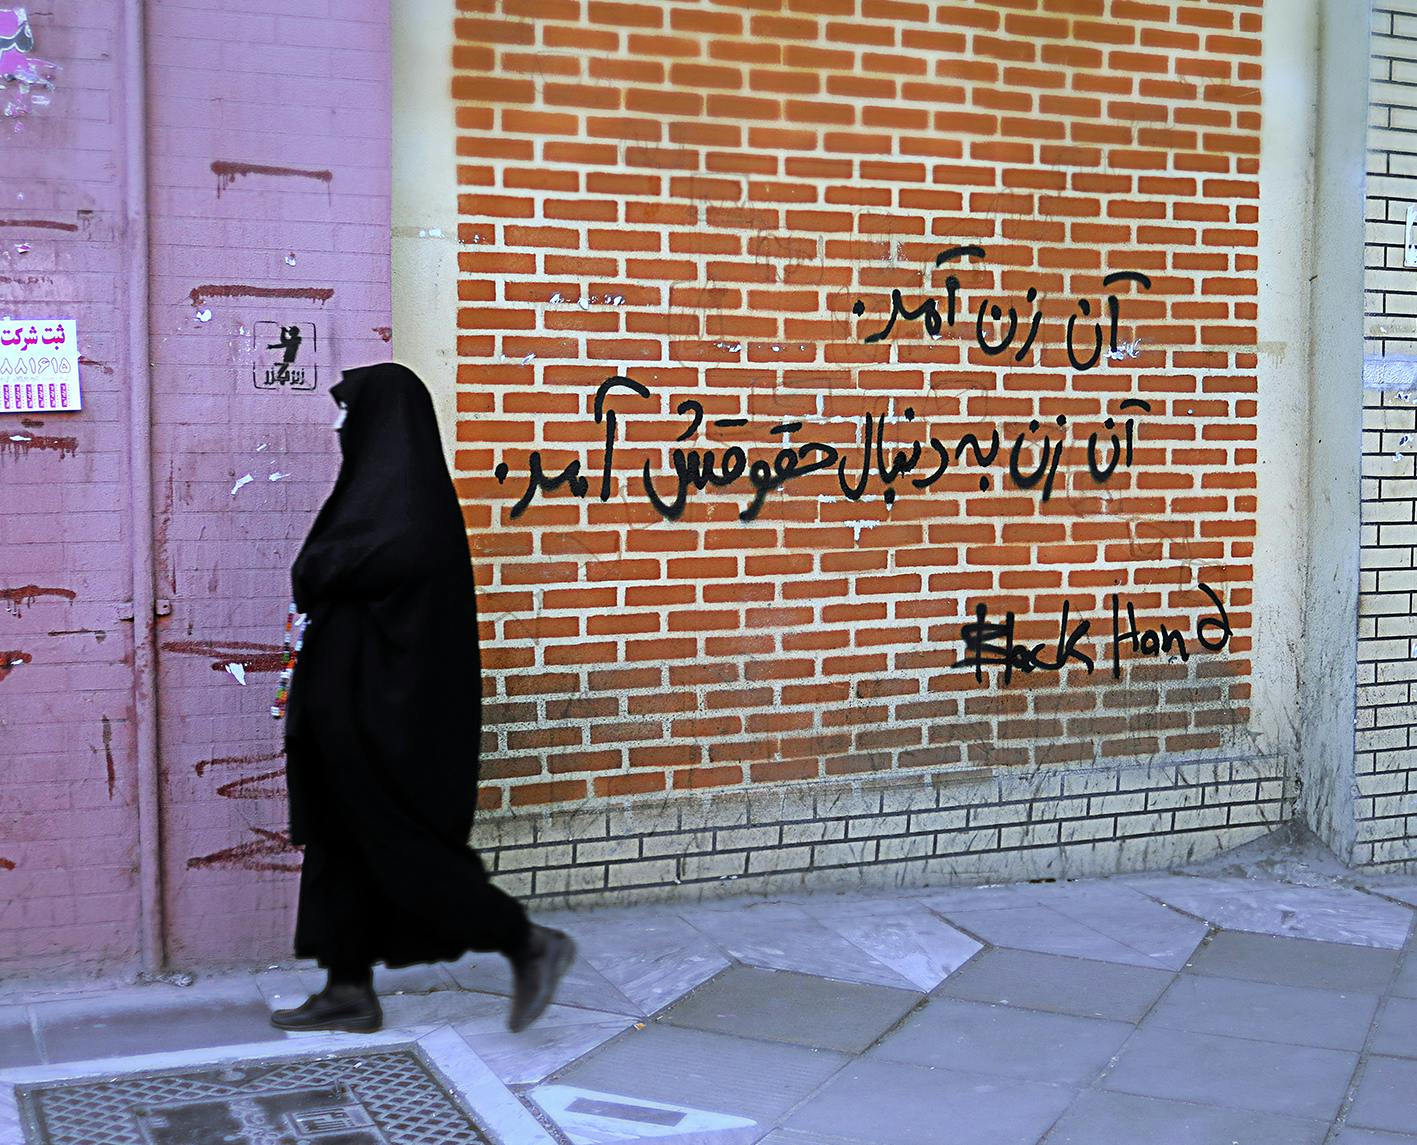 تصویری از یک گرافیتی (دیوارنگاری) با عنوان «آن زن آمد، آن زن به‌دنبال حقوقش آمد». یک زن با حجاب چادر از جلوی این دیوار در حال گذشتن است.